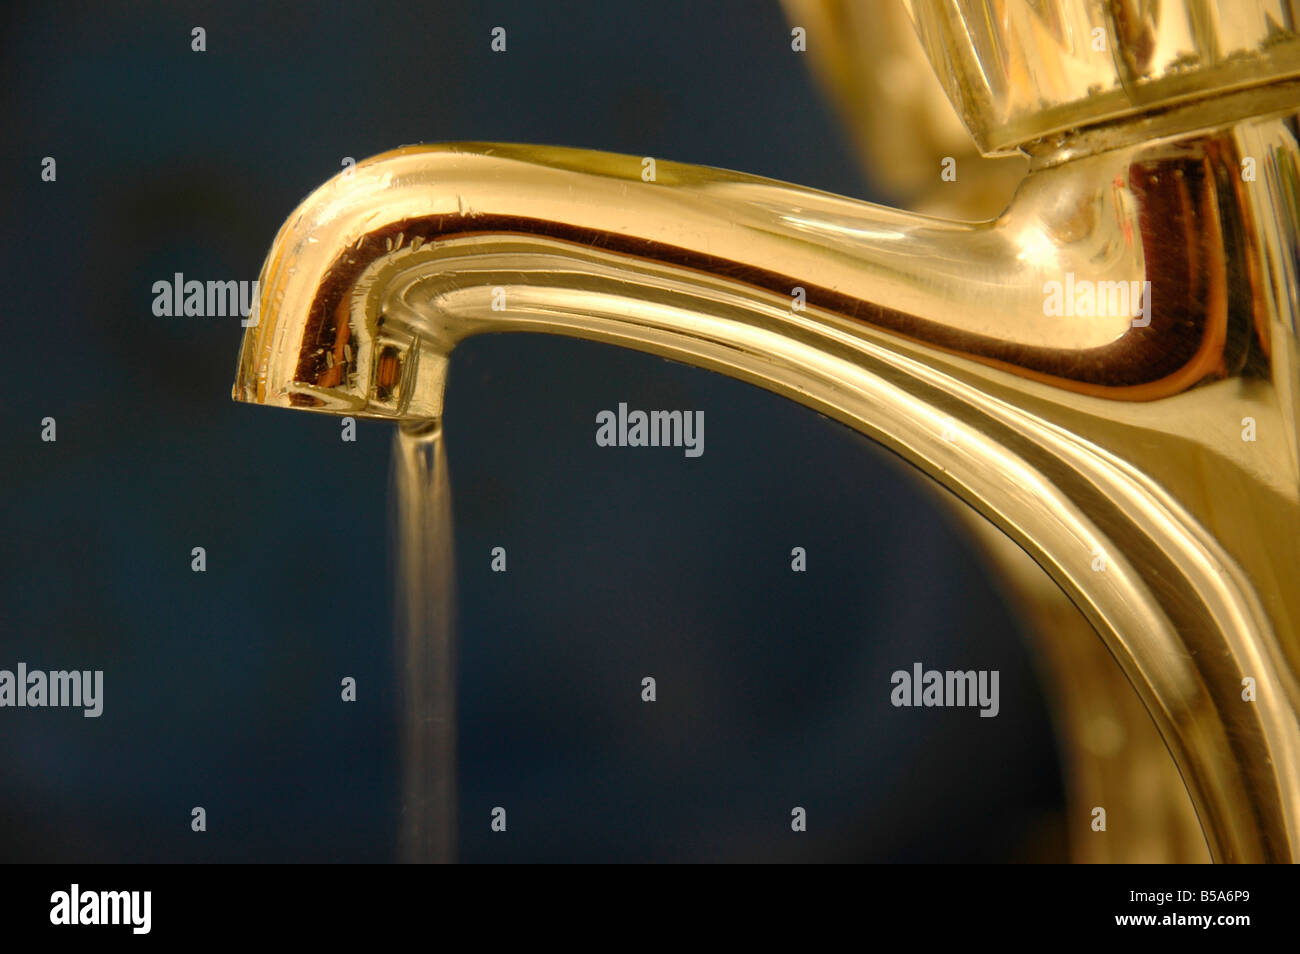 La consommation de l'eau du robinet qui coule. Banque D'Images